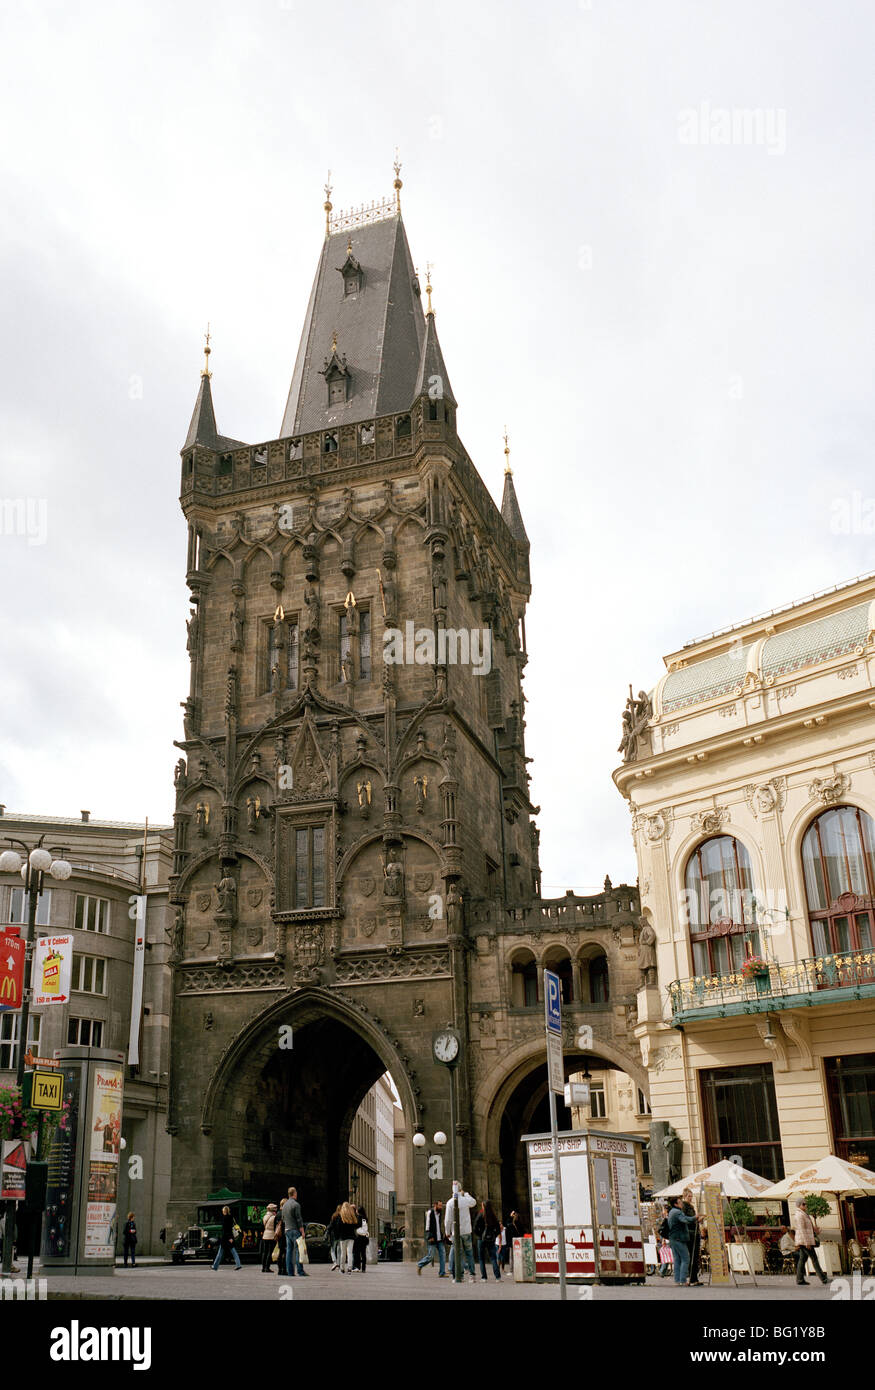 Welt zu reisen. Das Pulver Turm Stare Mesto in der alten Stadt Prag in der Tschechischen Republik in Osteuropa. Kultur-Geschichte-Traveller-Fernweh Stockfoto